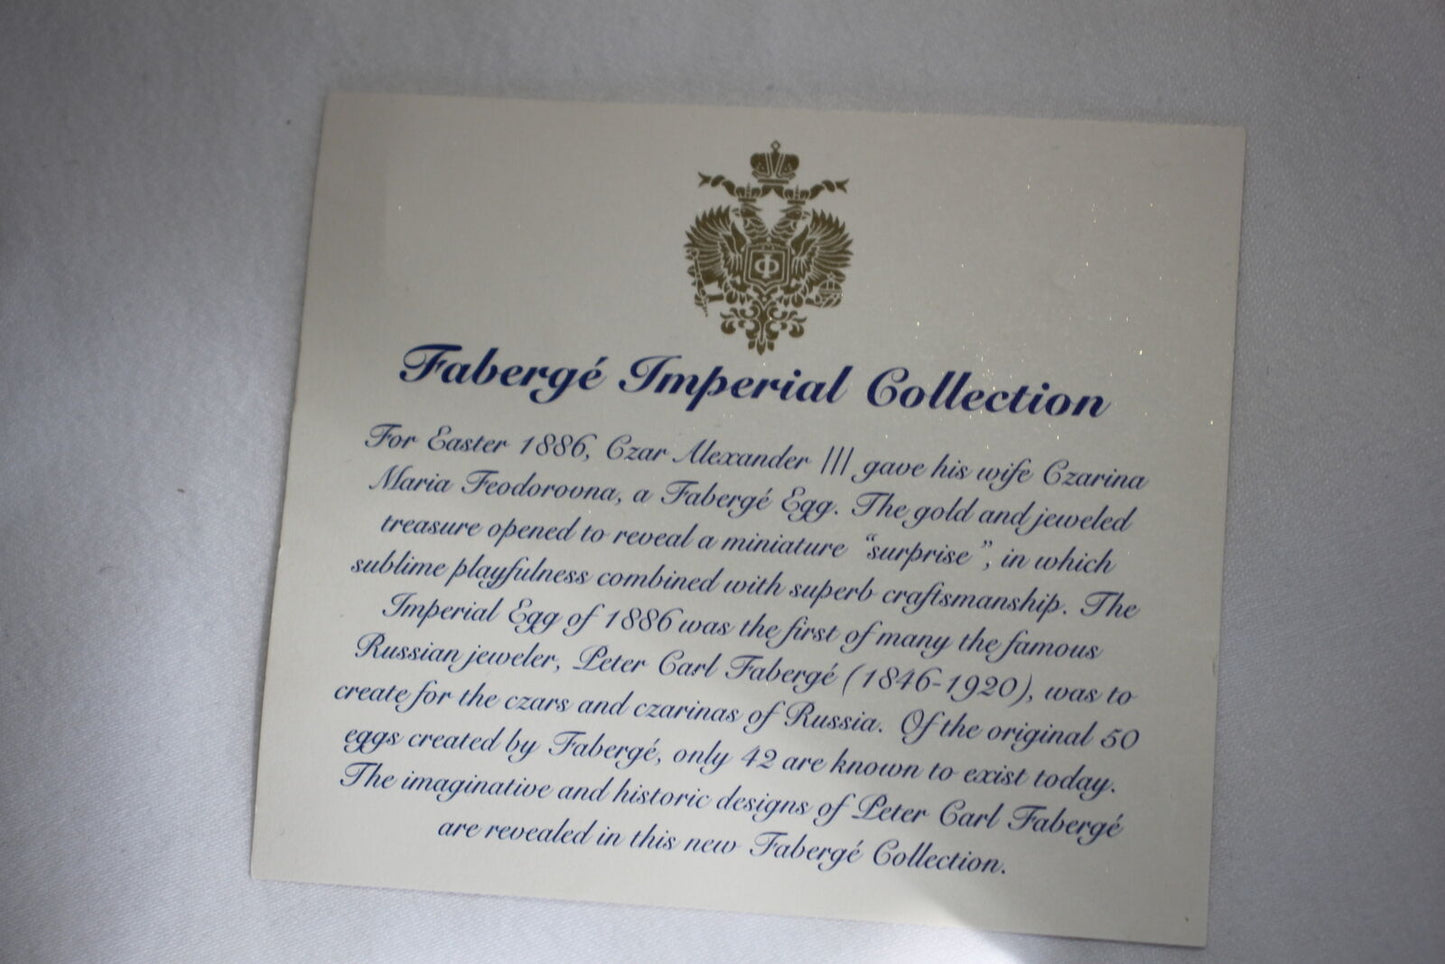 Faberge Na Zdorovya Glasses  set of 4 Edition II Measure 3 7'8 " H x 3 3/8 " W